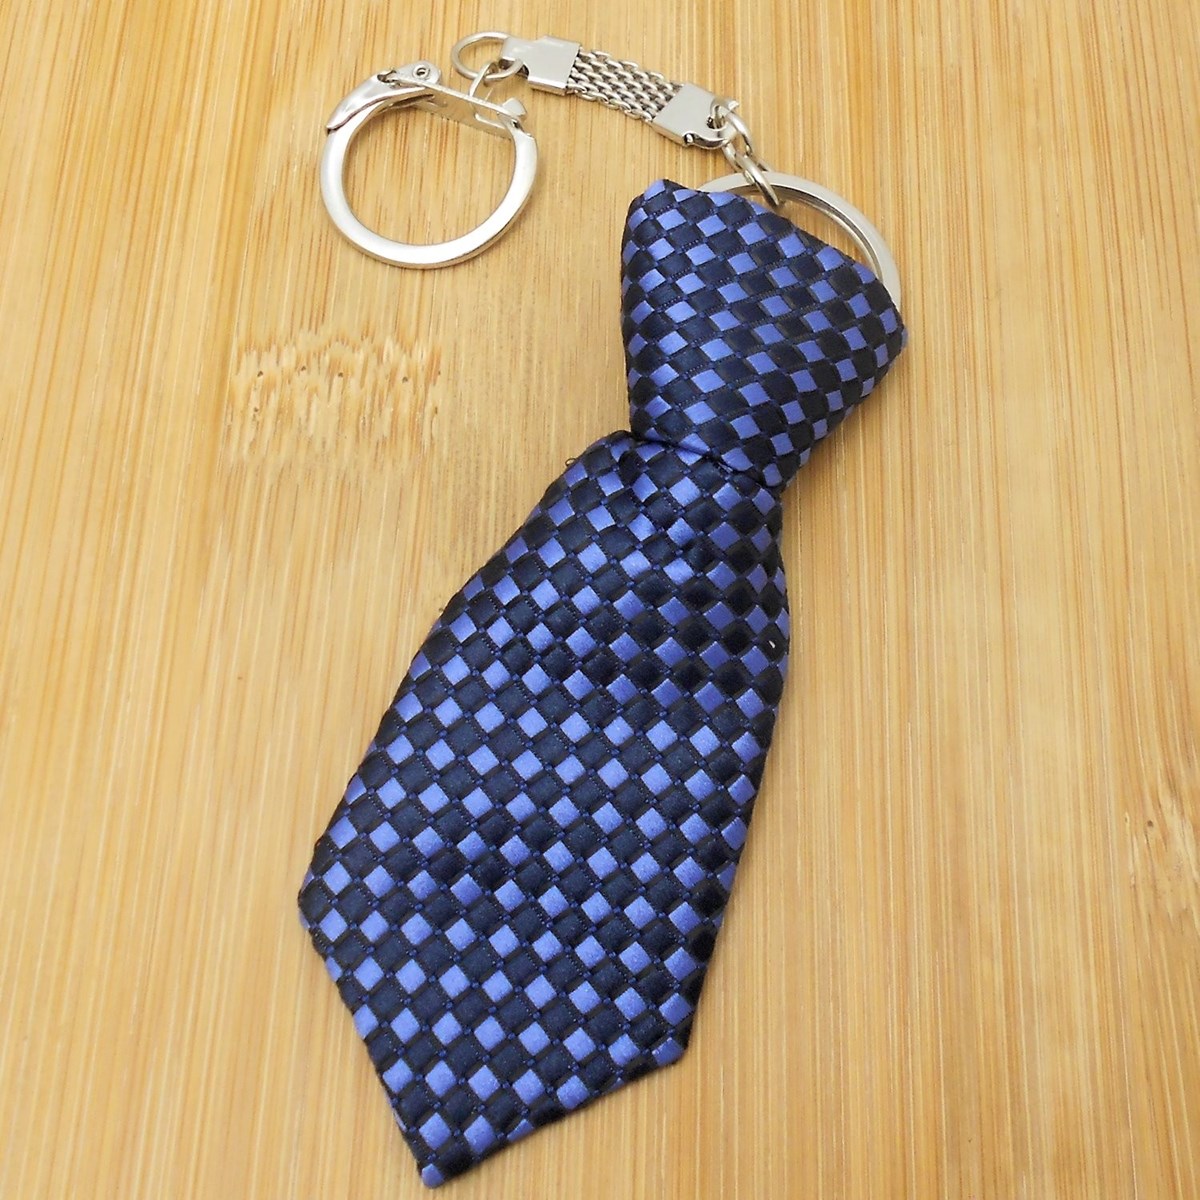 Porte-clés cravate en tissu losange bleu et noir argenté - vue 2